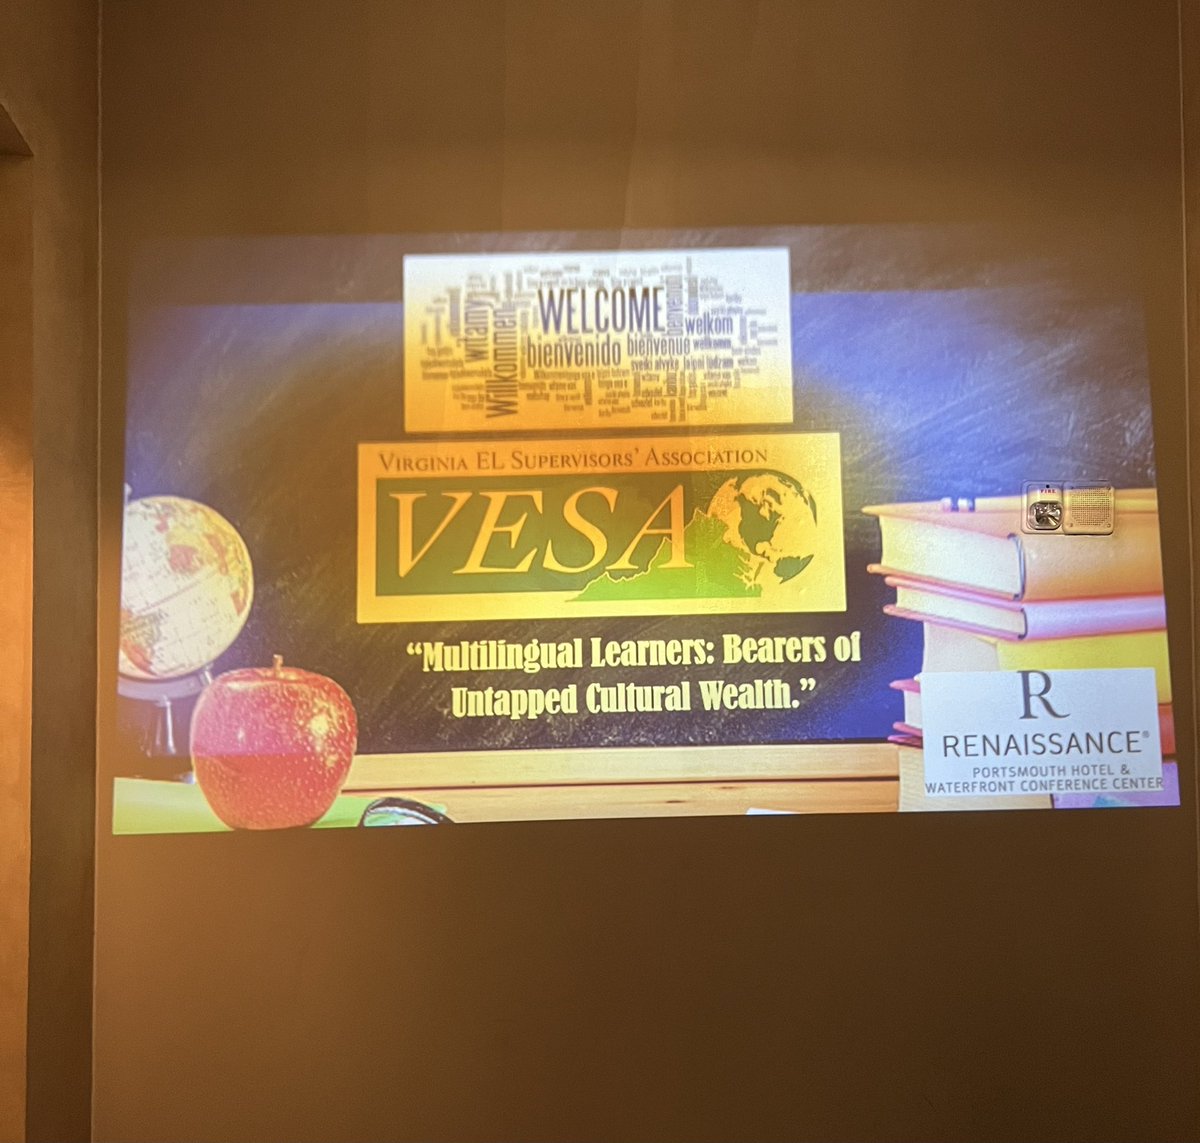 Đã đến lúc cho một sự hợp tác nhỏ trên toàn tiểu bang @VESA_VA 2023. Thật tuyệt vời khi được gặp trực tiếp, học hỏi, cộng tác và vui cười cùng nhau. https://t.co/vTkCKDH9s9